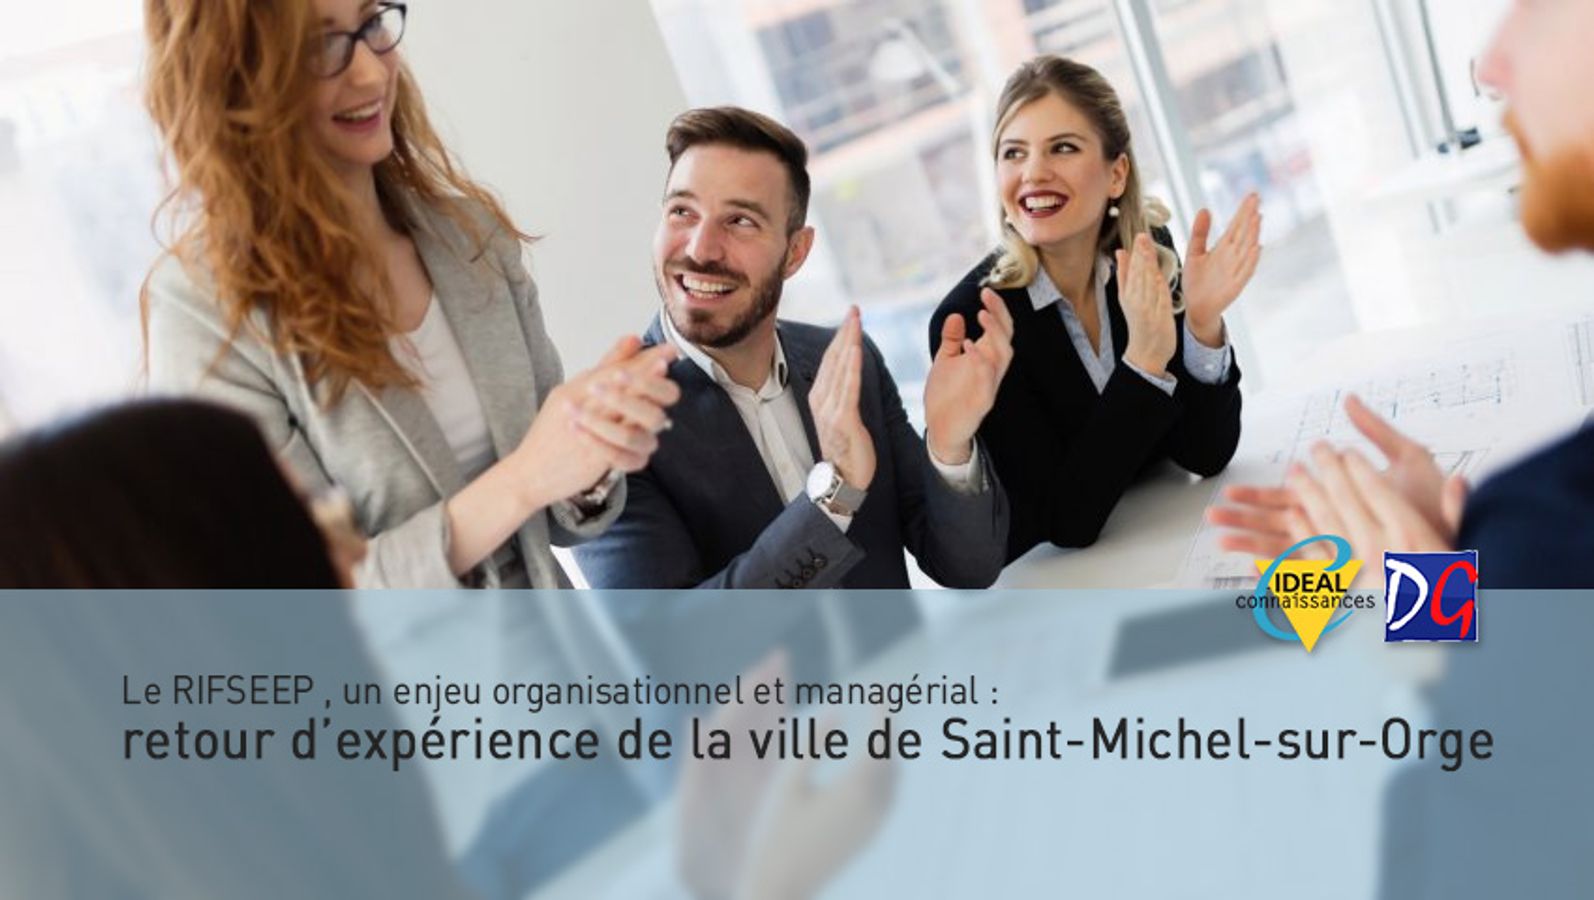 Le RIFSEEP , un enjeu organisationnel et managérial : retour d’expérience de la ville de Saint-Michel-sur-Orge